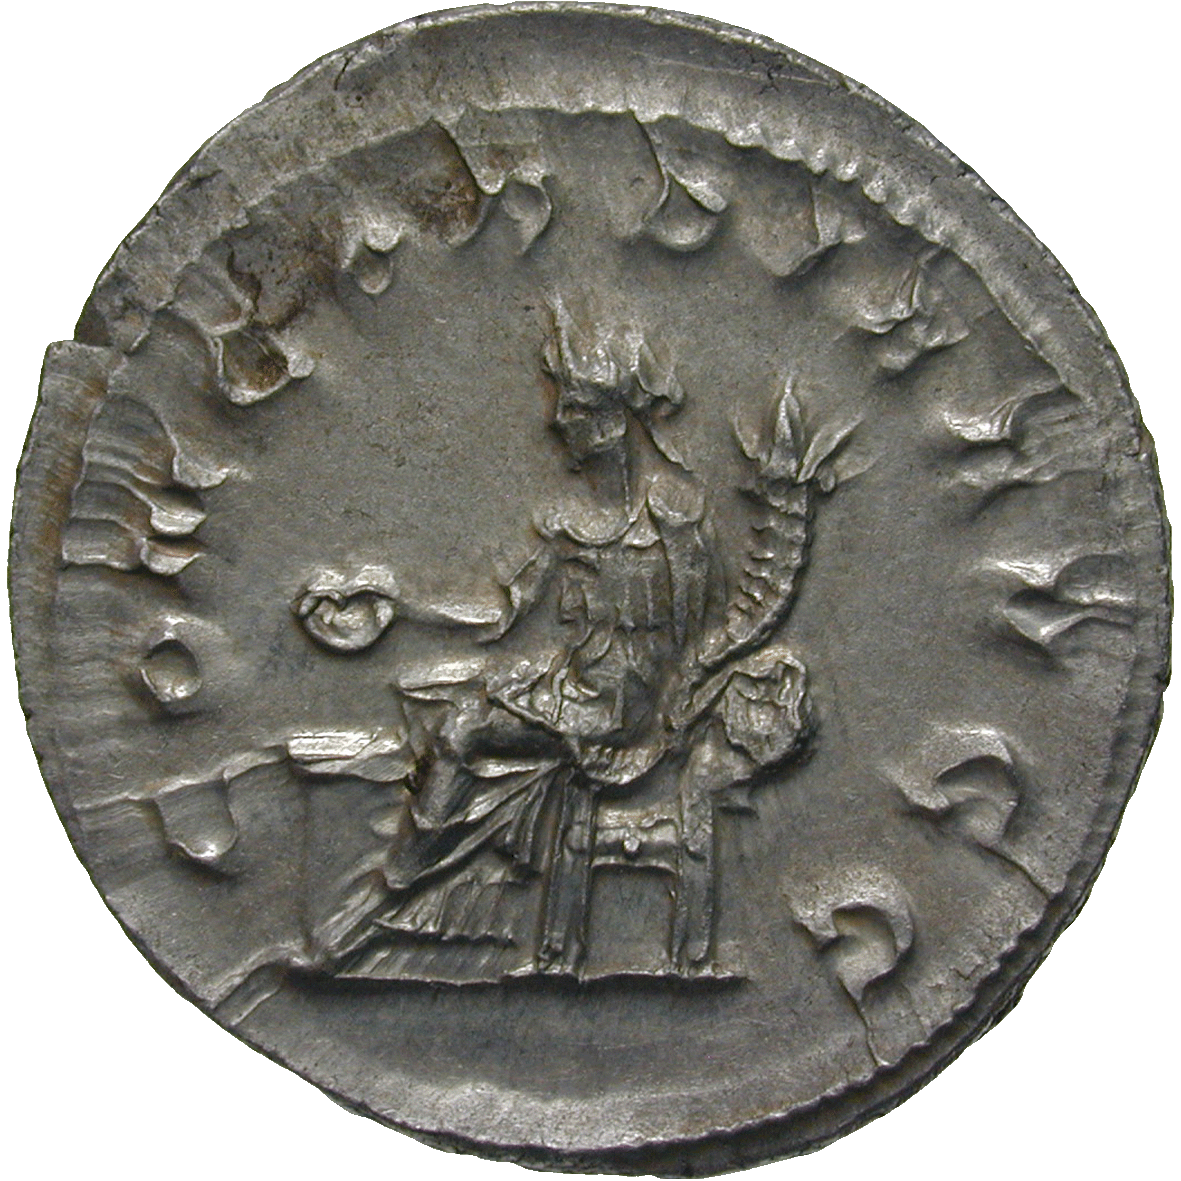 Roman Empire, Philip the Arab for Otacilia Severa, Denarius (reverse)